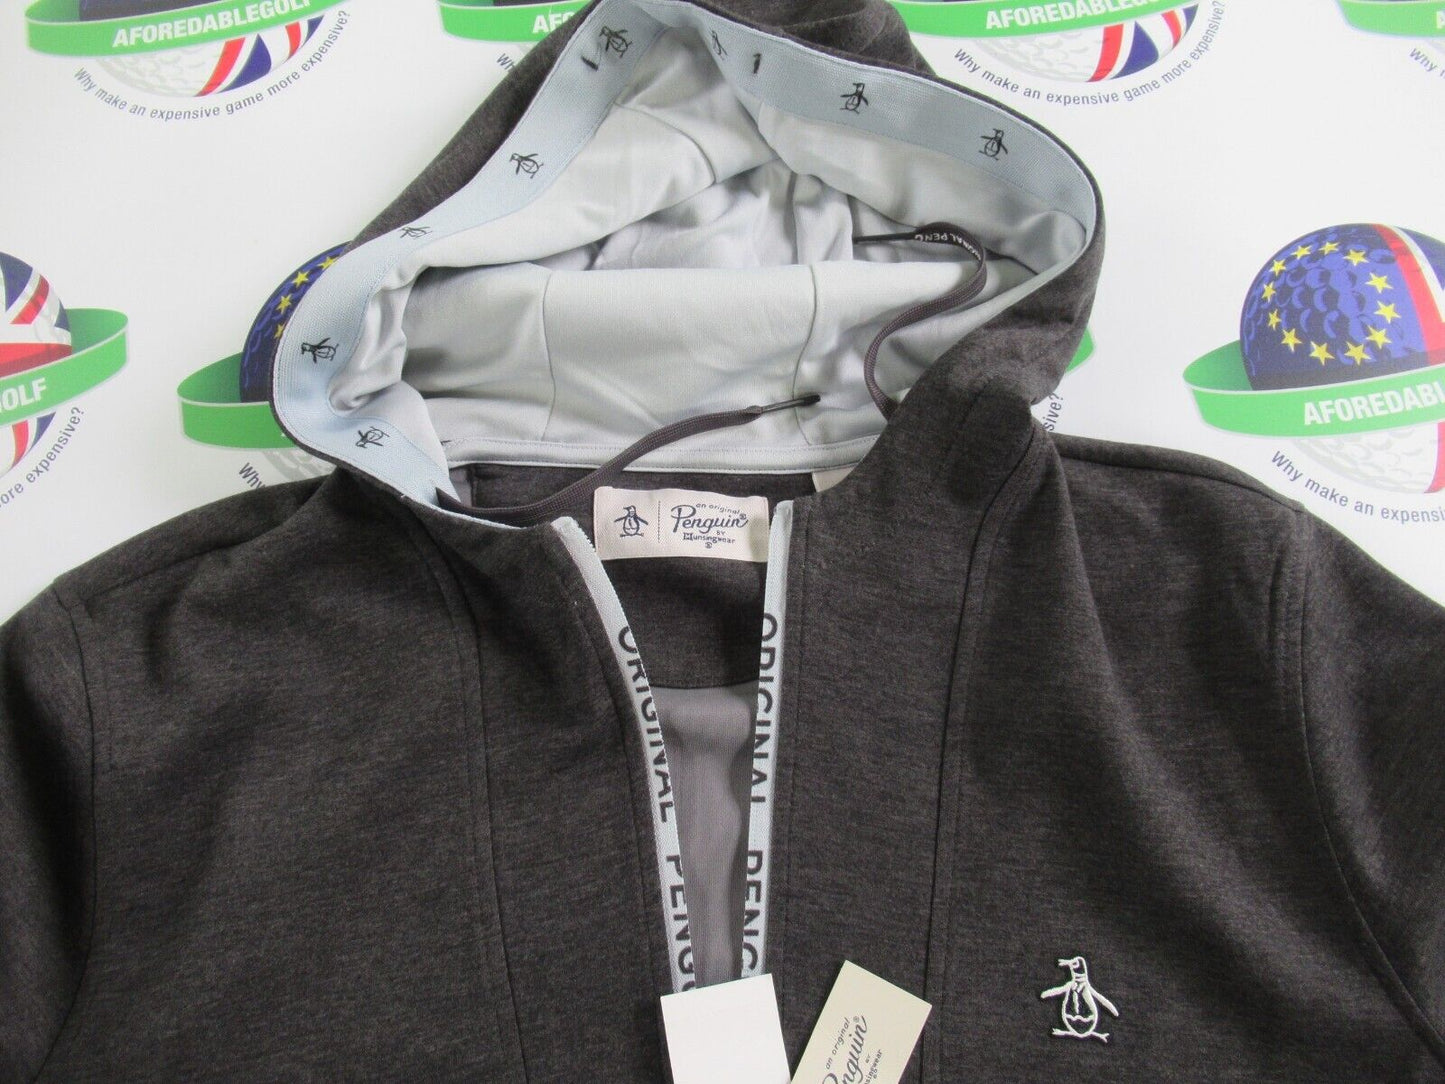 Original Penguin Golf quarter zip performance hooded 1/4 zip top grey medium